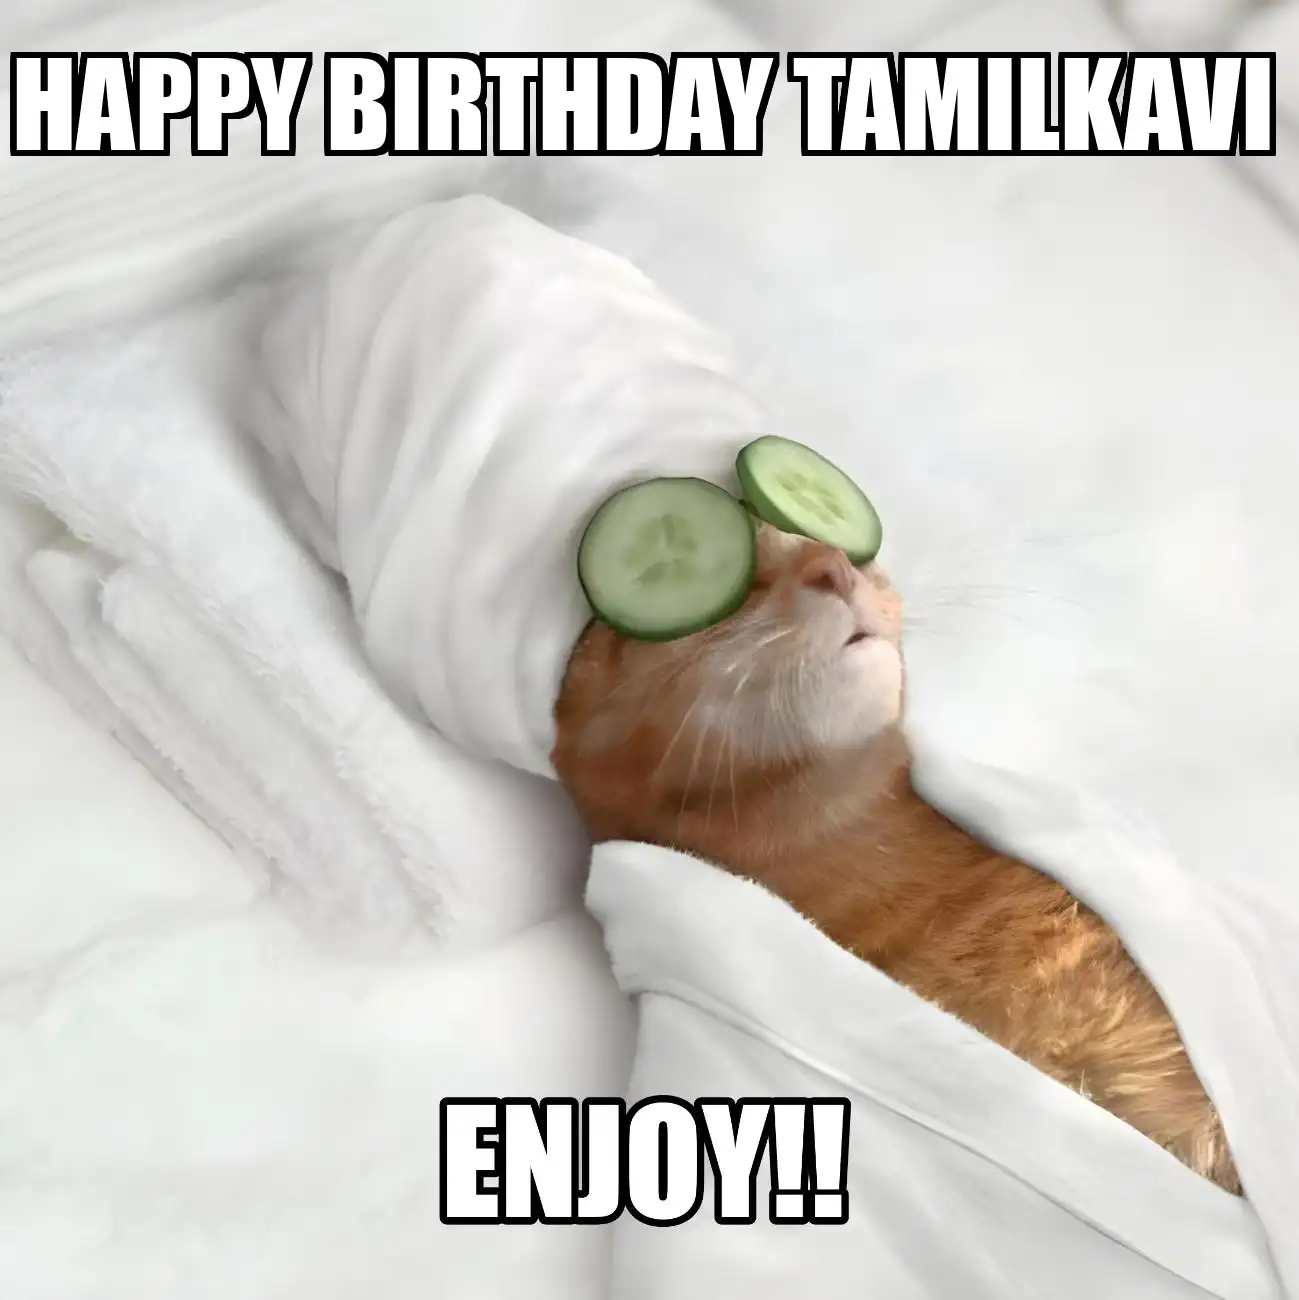 Happy Birthday Tamilkavi Enjoy Cat Meme